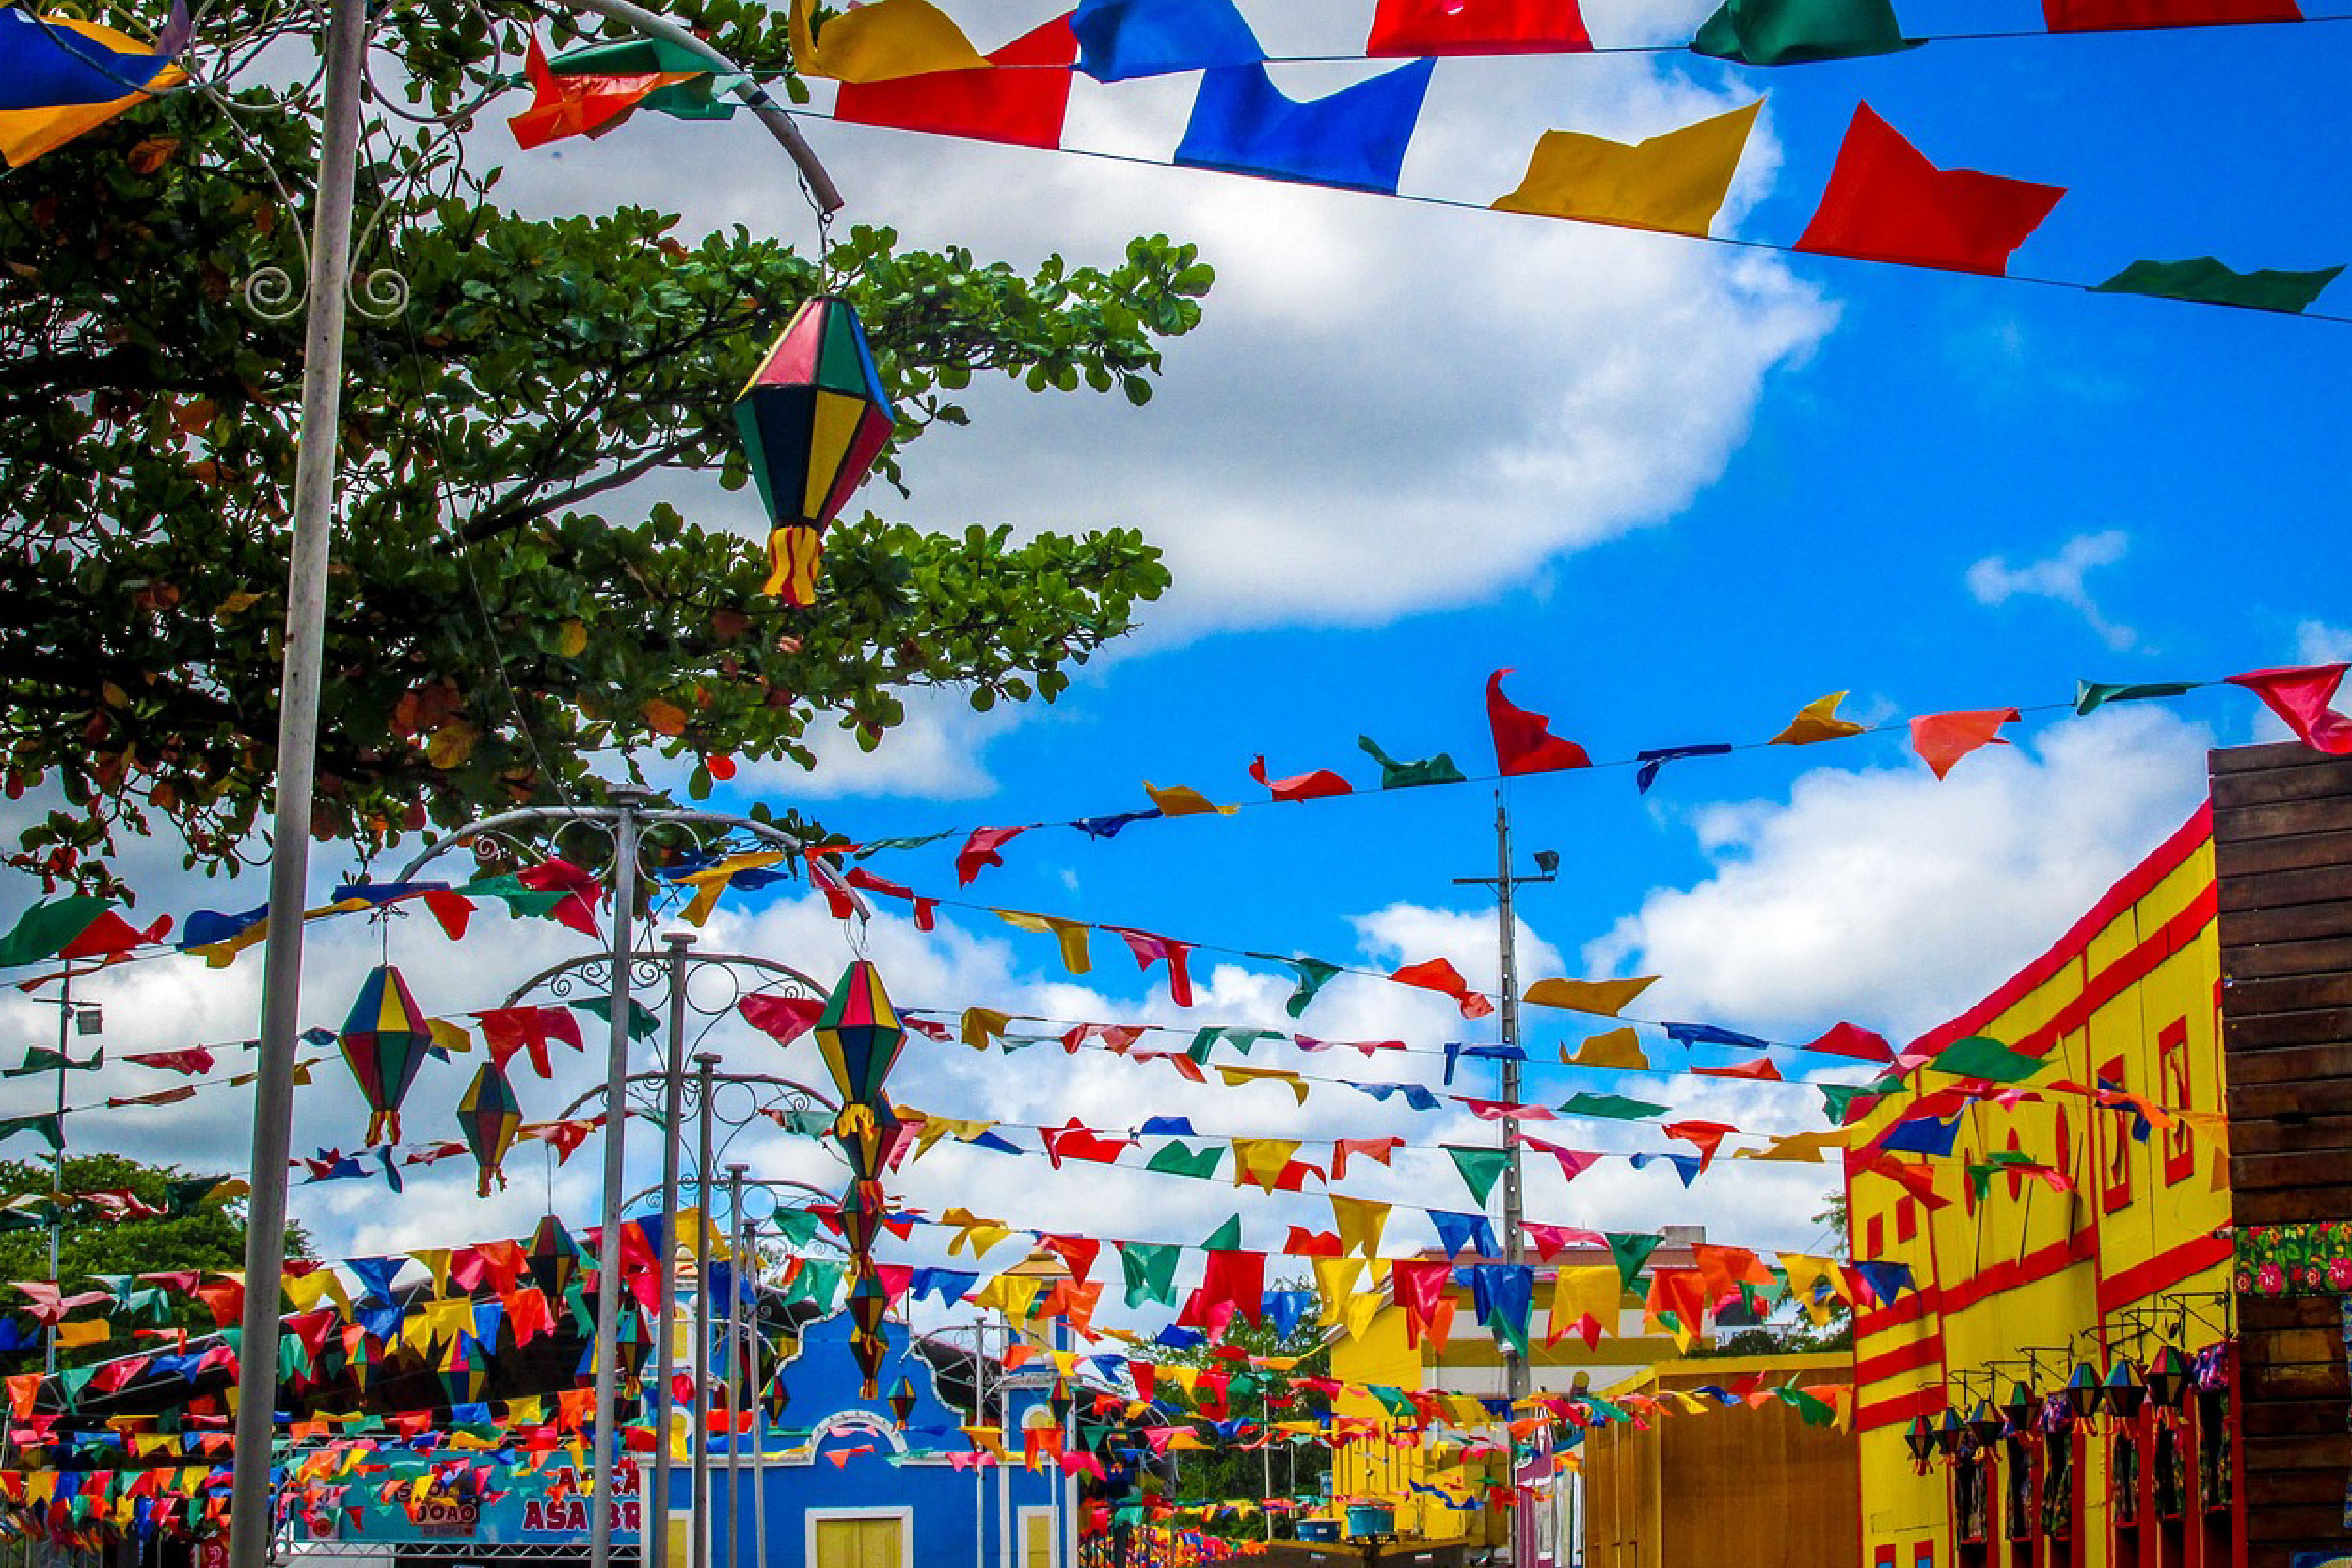 Foto de um conjunto cênico de casinhas coloridas e bandeirolas de São João penduradas na parte superior. No lado esquerdo, alguns postes adornados com balões coloridos.